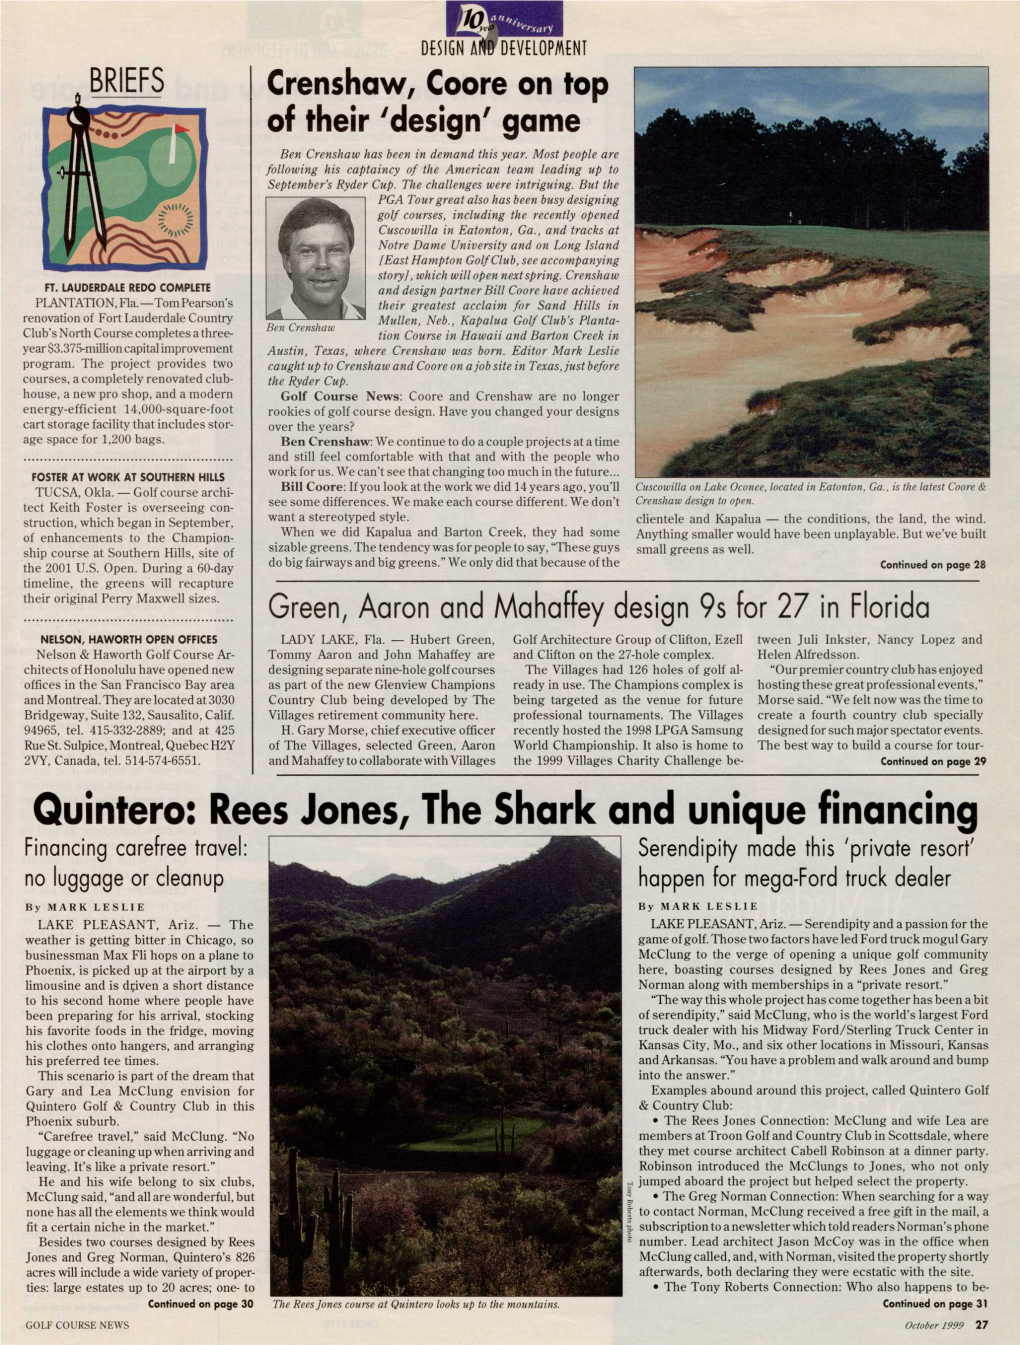 Quintero: Rees Jones, the Shark and Unique Financing